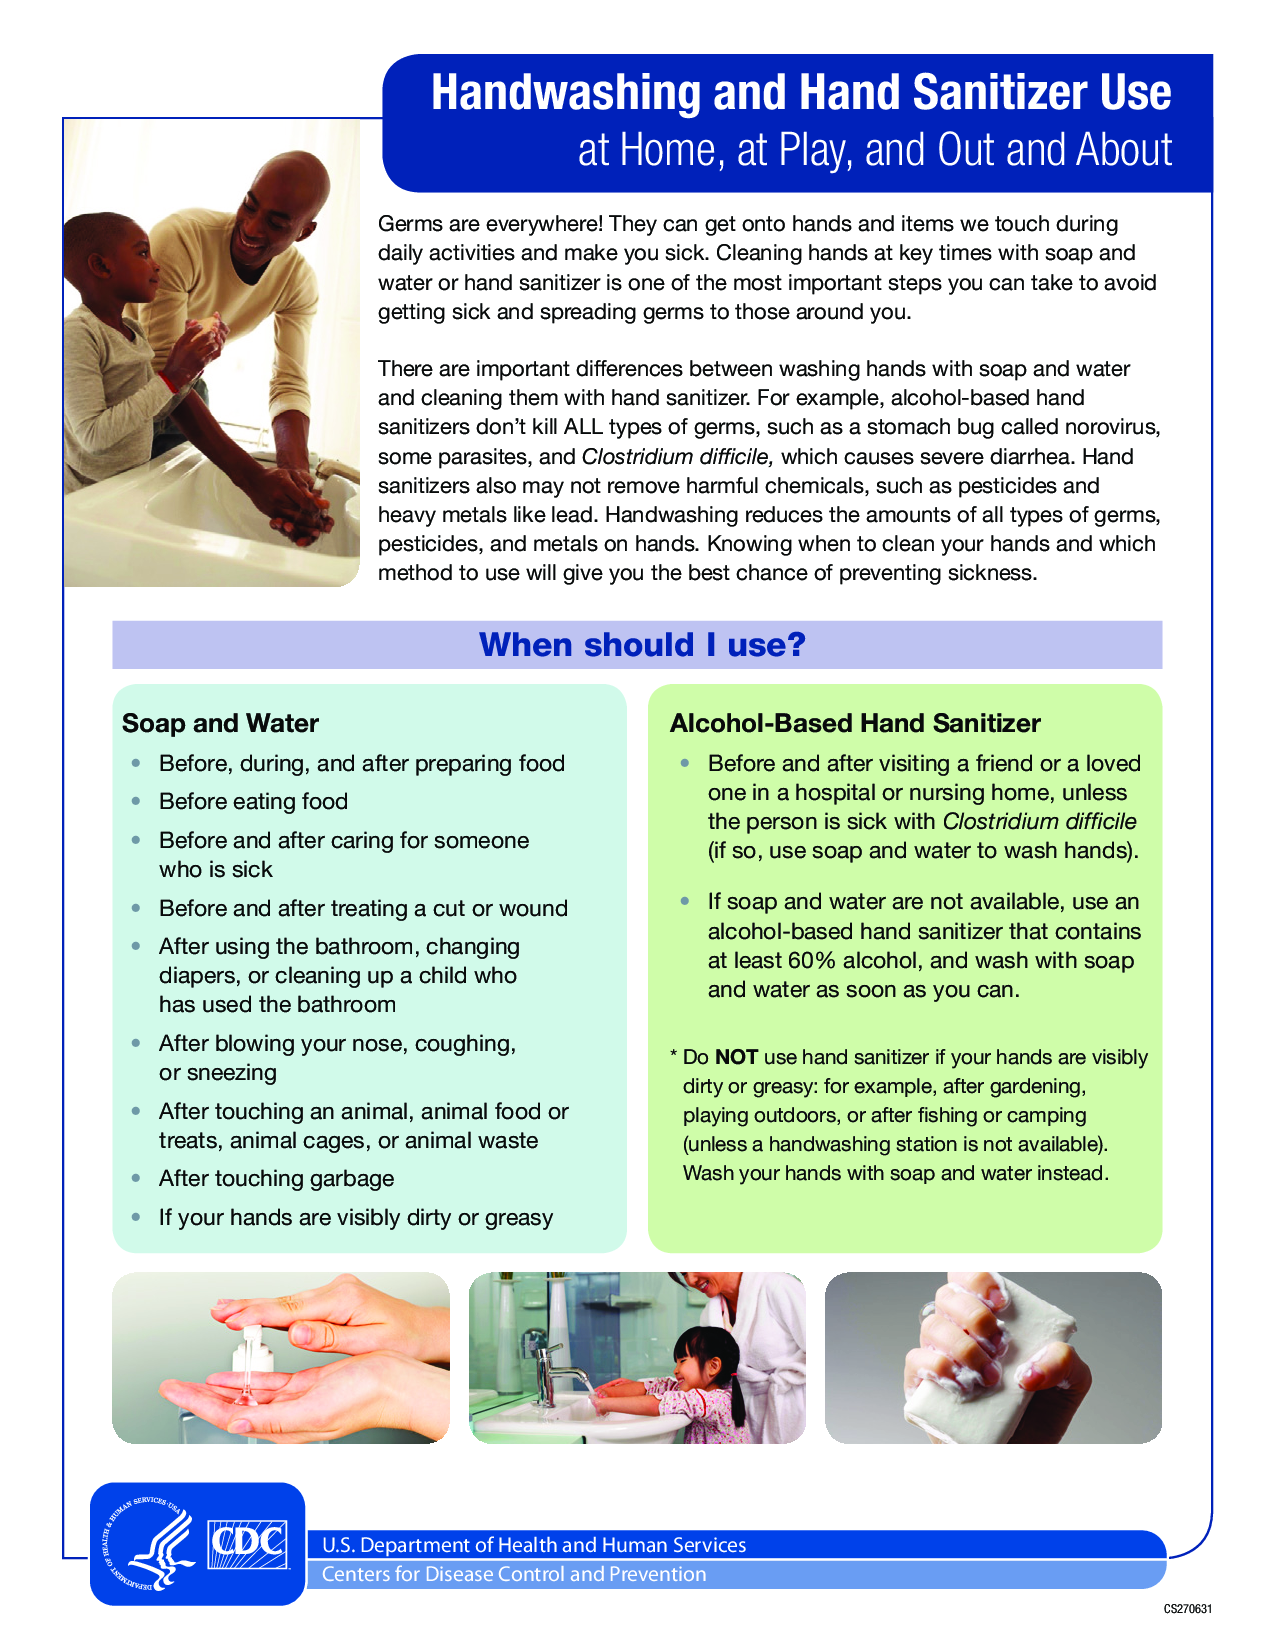 hand-sanitizer-factsheet_001